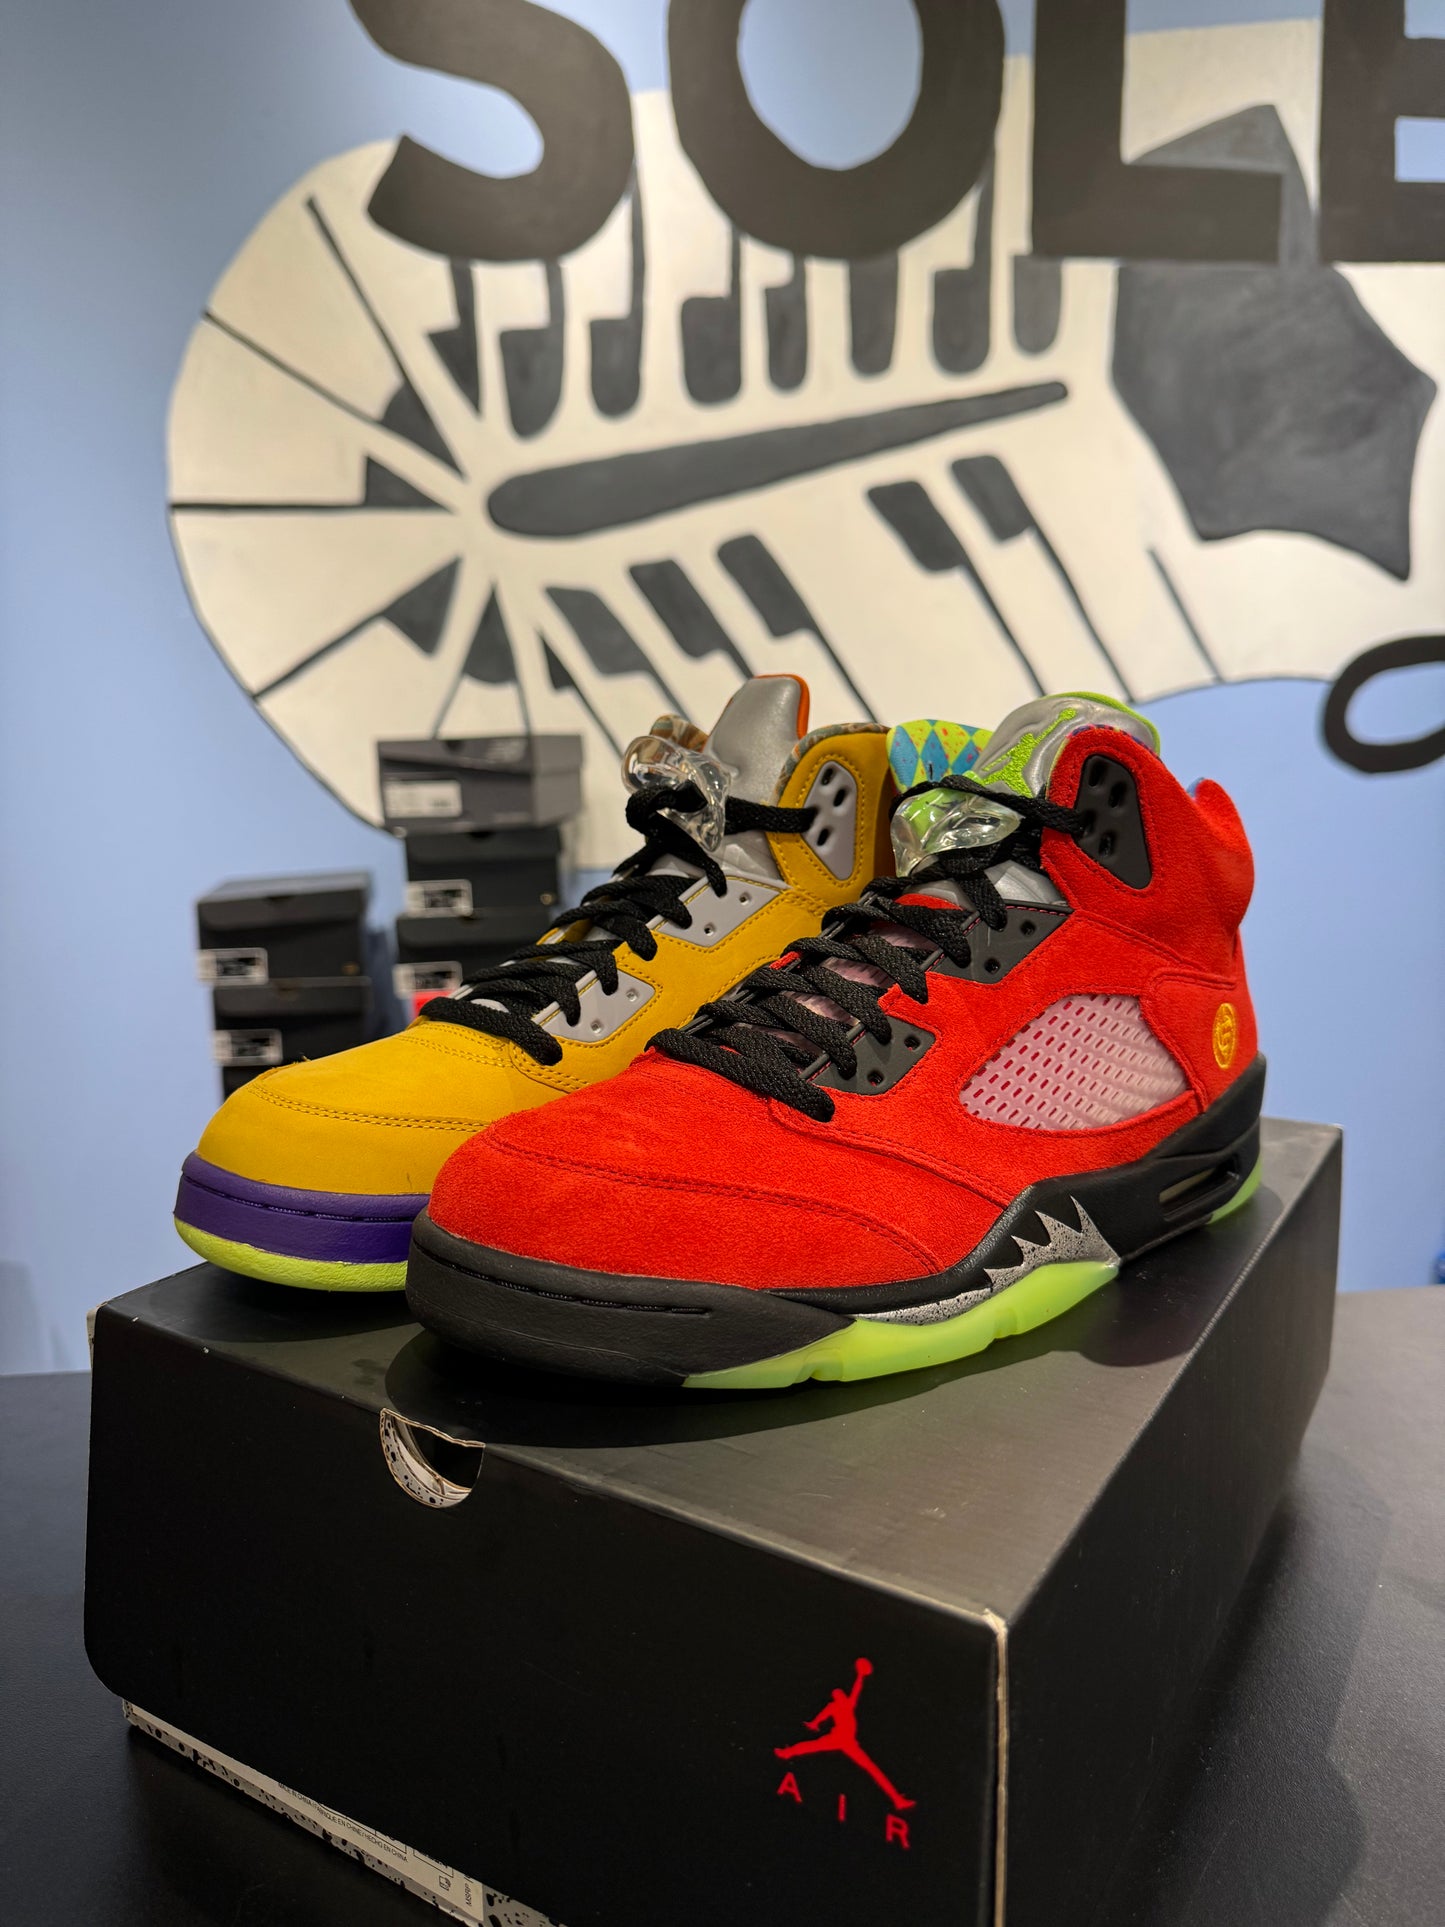 Air Jordan 5 “What The”